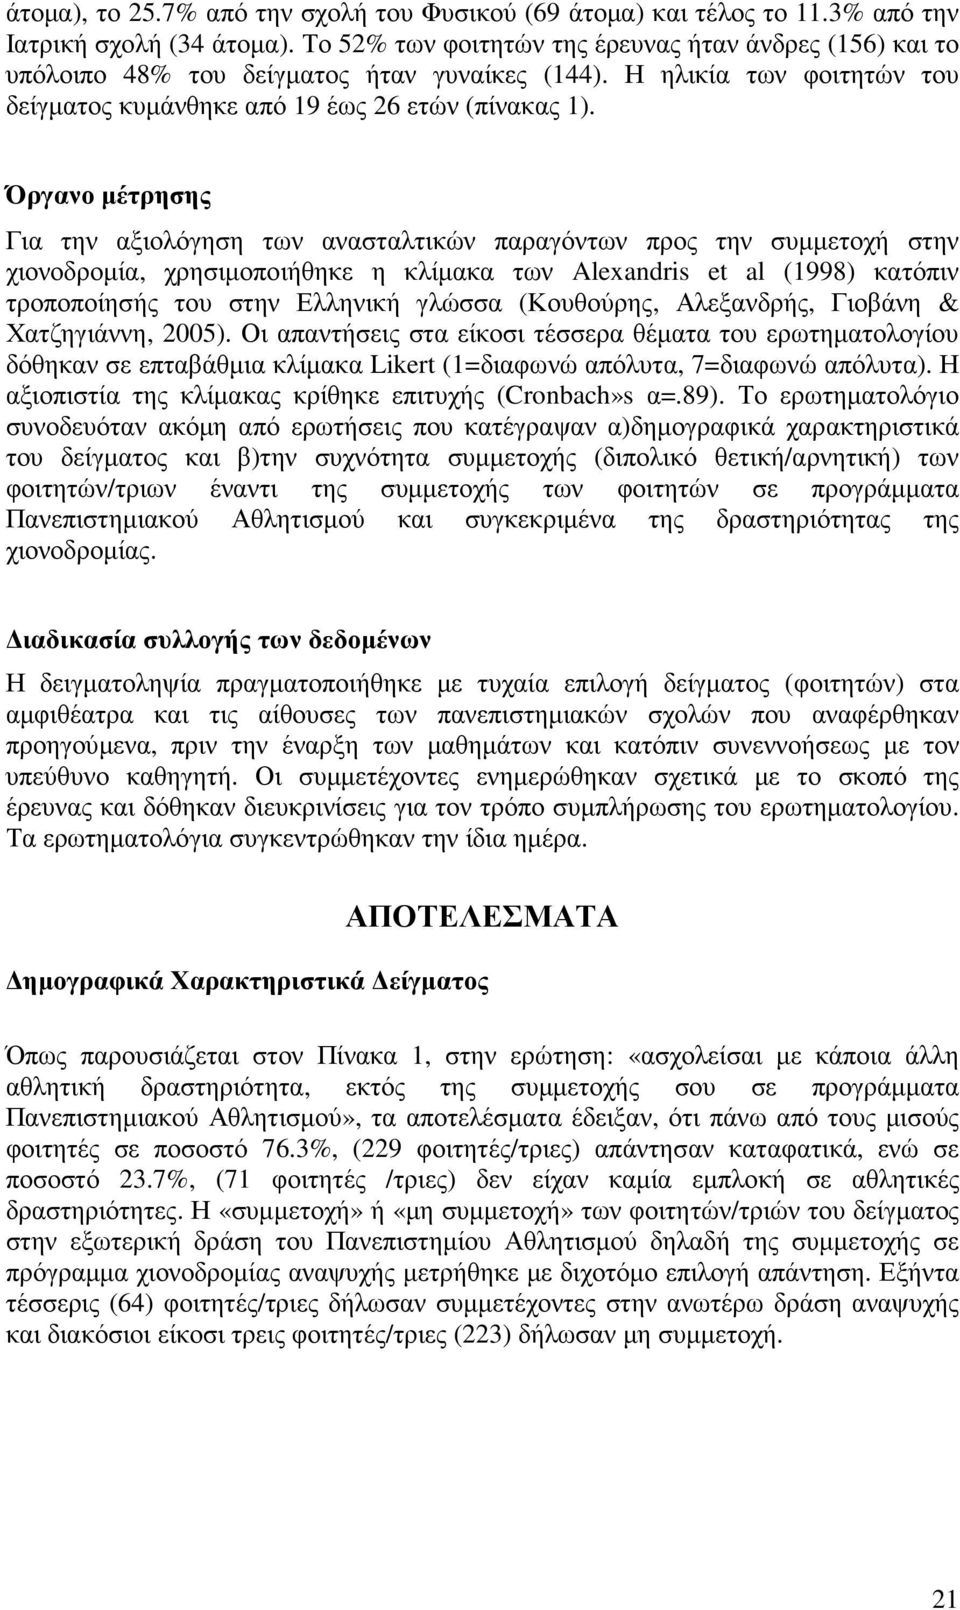 Όργανο µέτρησης Για την αξιολόγηση των ανασταλτικών παραγόντων προς την συµµετοχή στην χιονοδροµία, χρησιµοποιήθηκε η κλίµακα των Alexandris et al (1998) κατόπιν τροποποίησής του στην Ελληνική γλώσσα